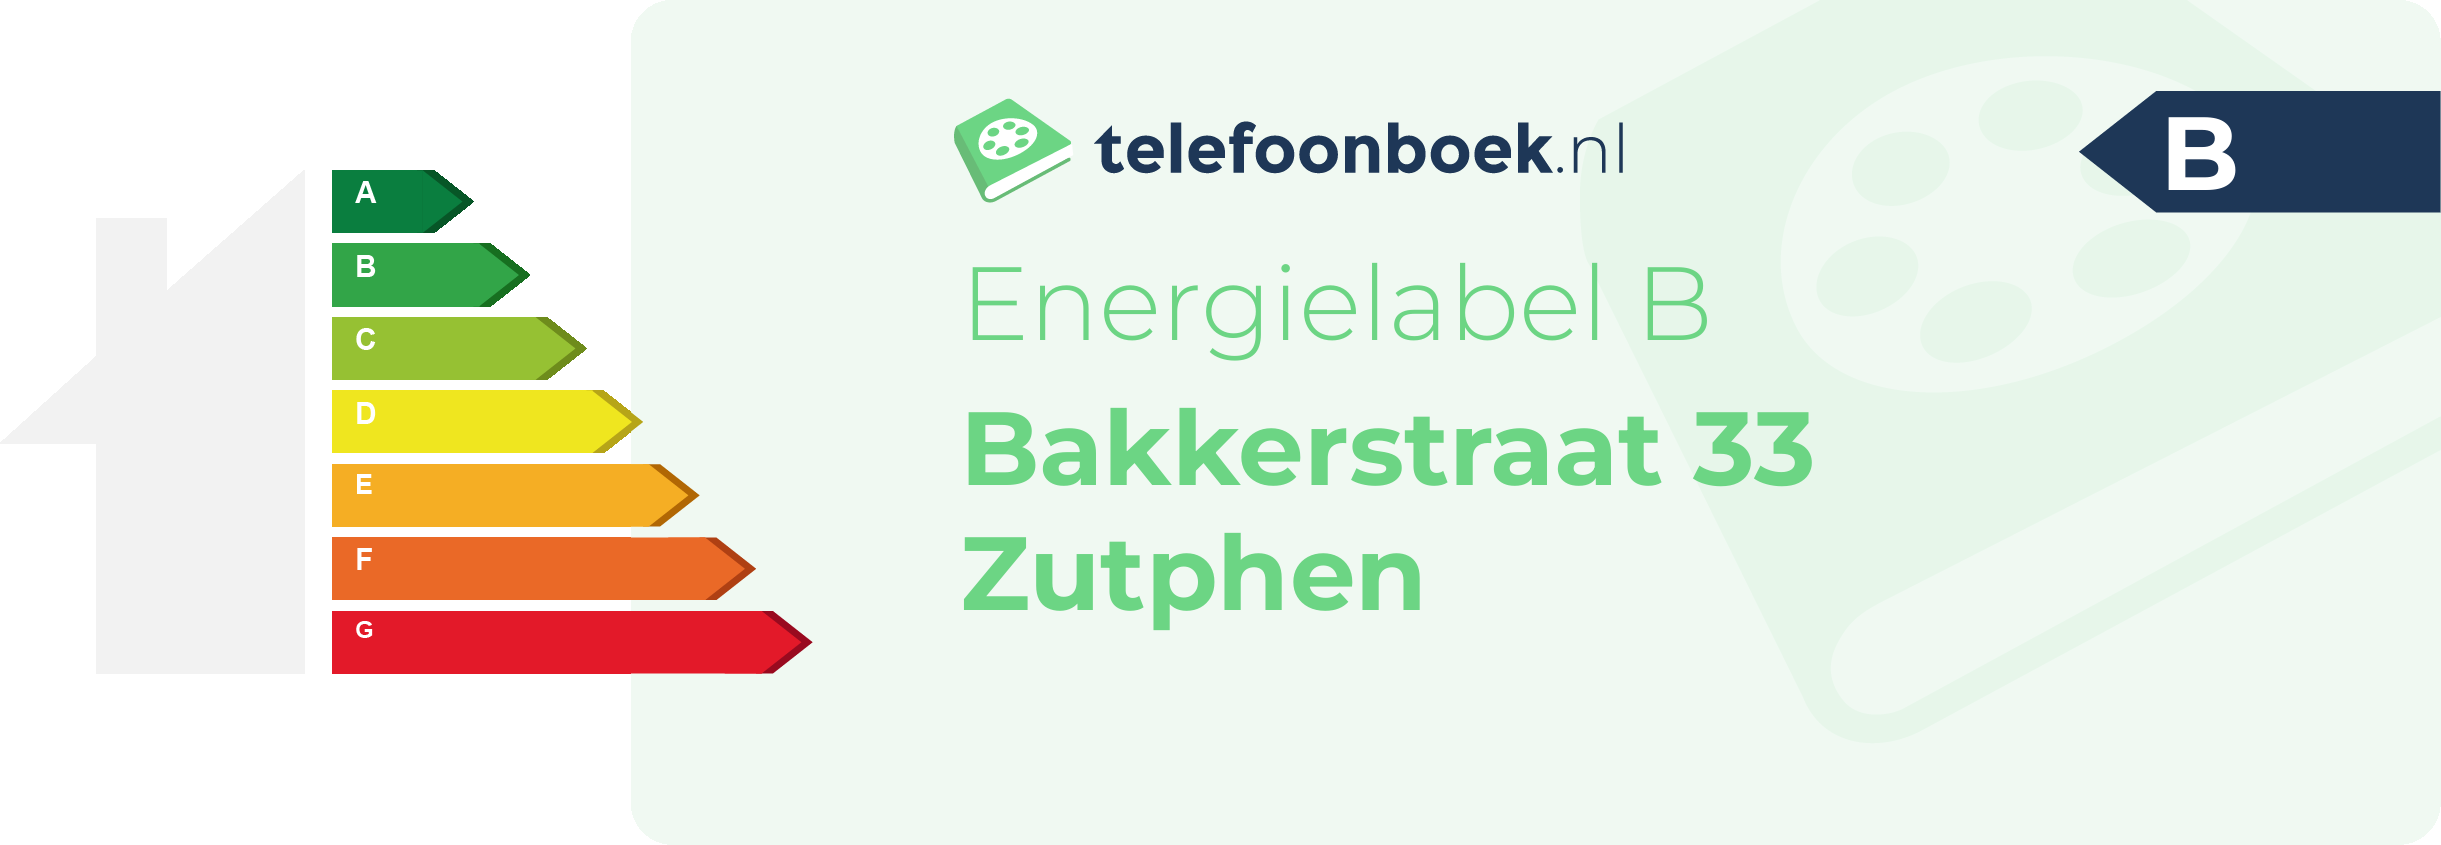 Energielabel Bakkerstraat 33 Zutphen